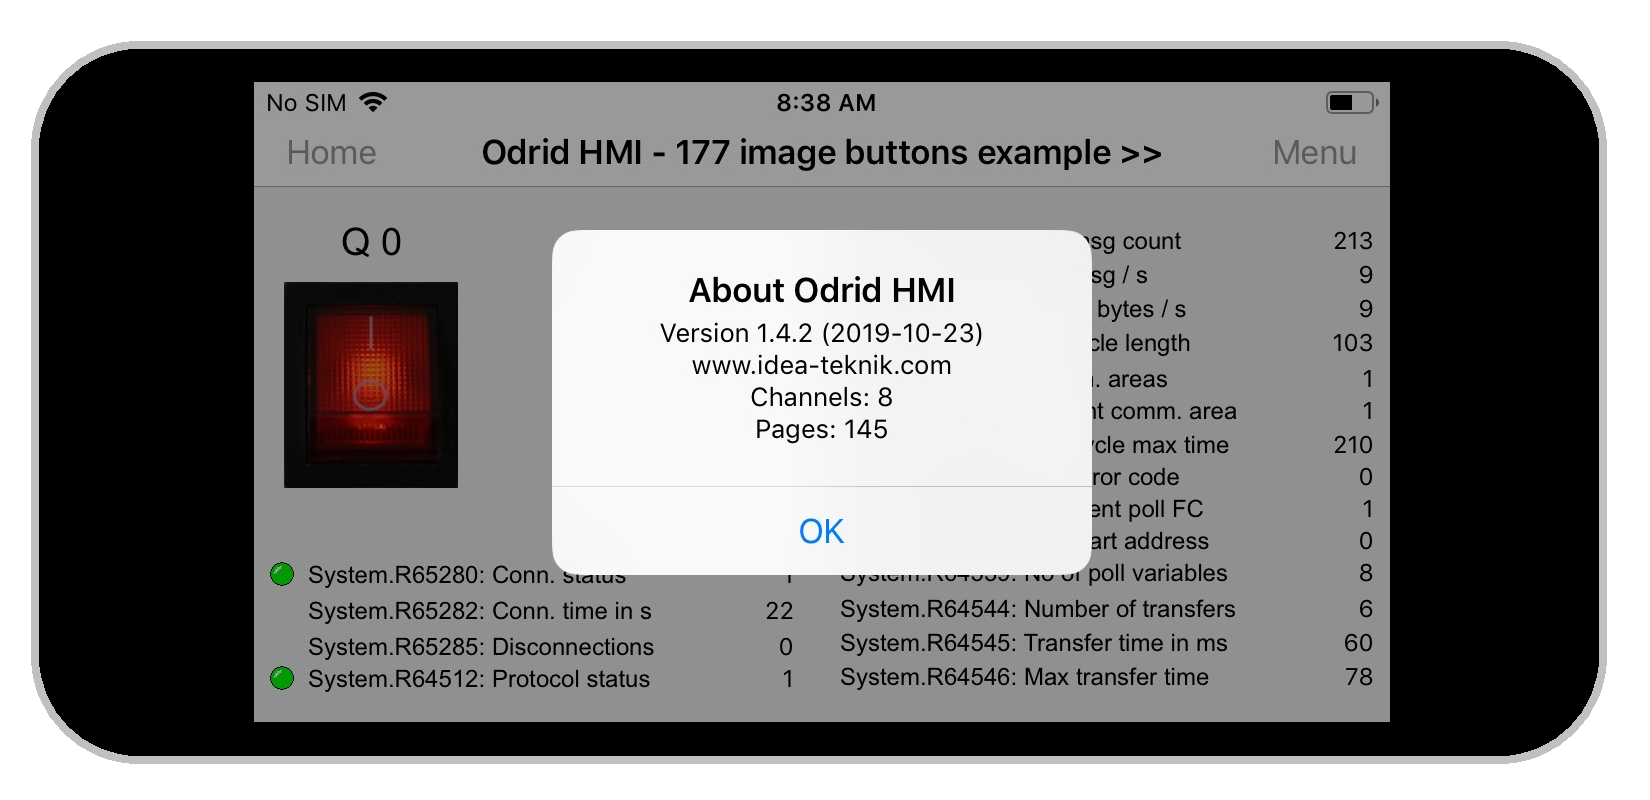 Odrid HMI 1.4.2 on an Iphone 5s